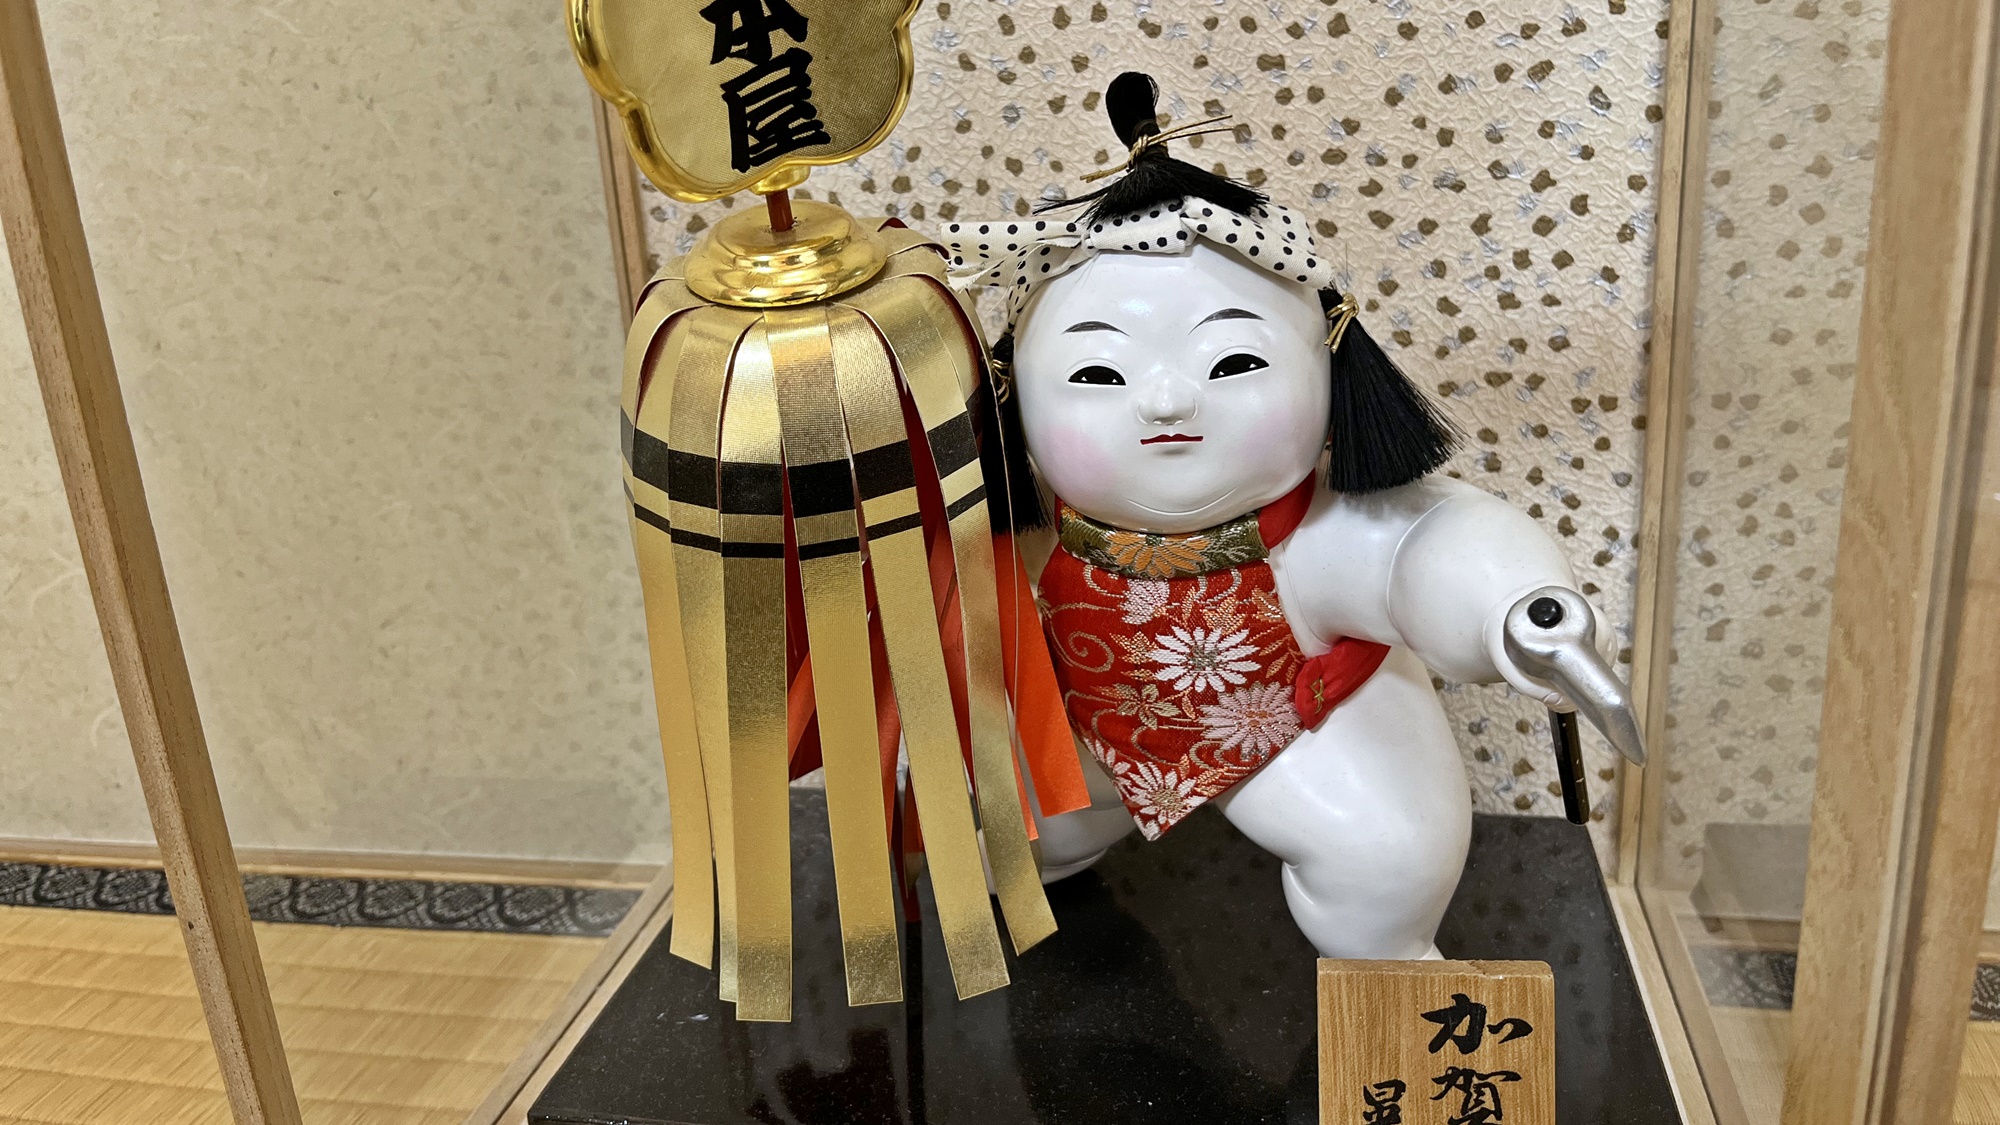 *客室に飾られている加賀人形は創業記念でつくられたものです。